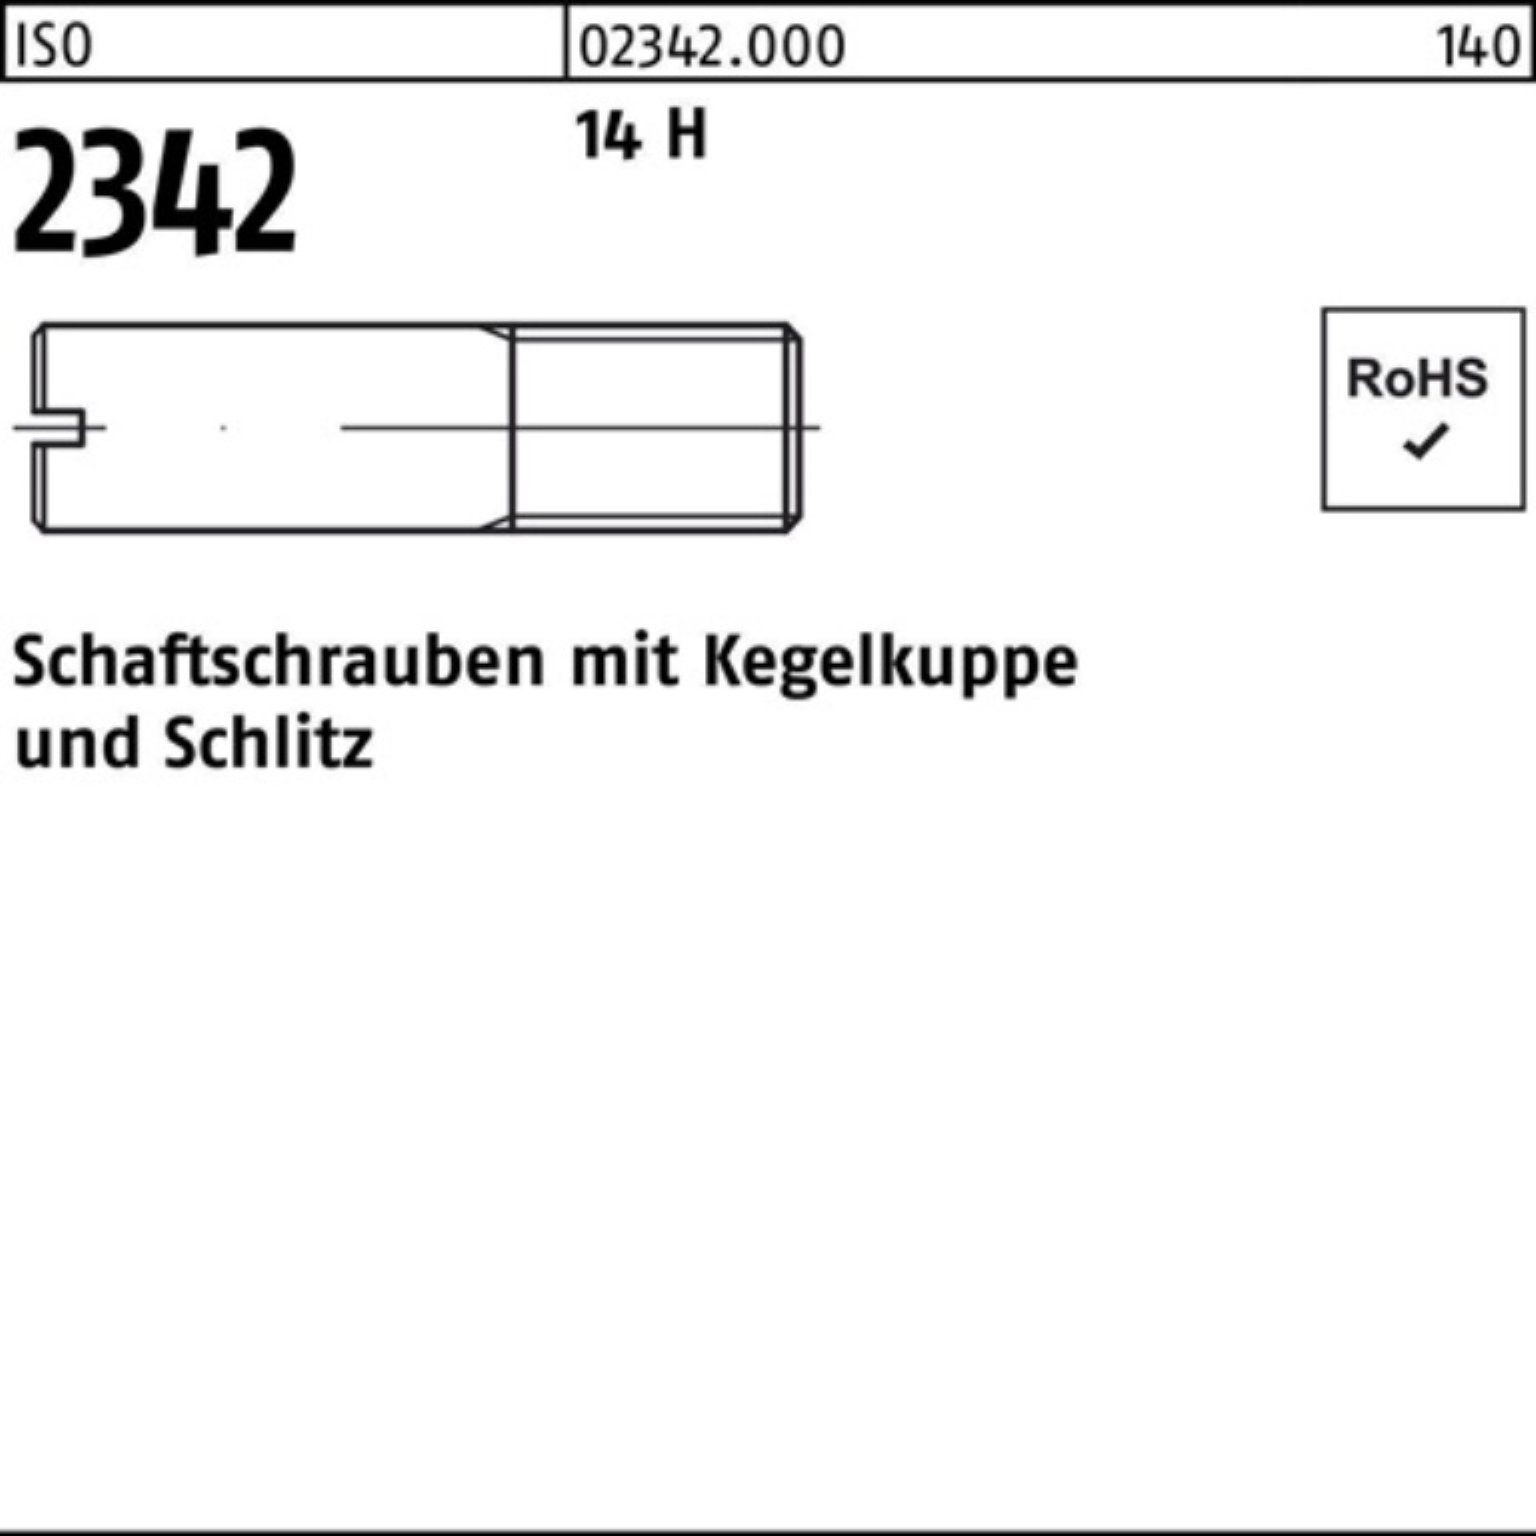 12 Reyher 100 Schaftschraube M5x ISO Pack H 2342 14 100er Kegelkuppe/Schlitz Schraube